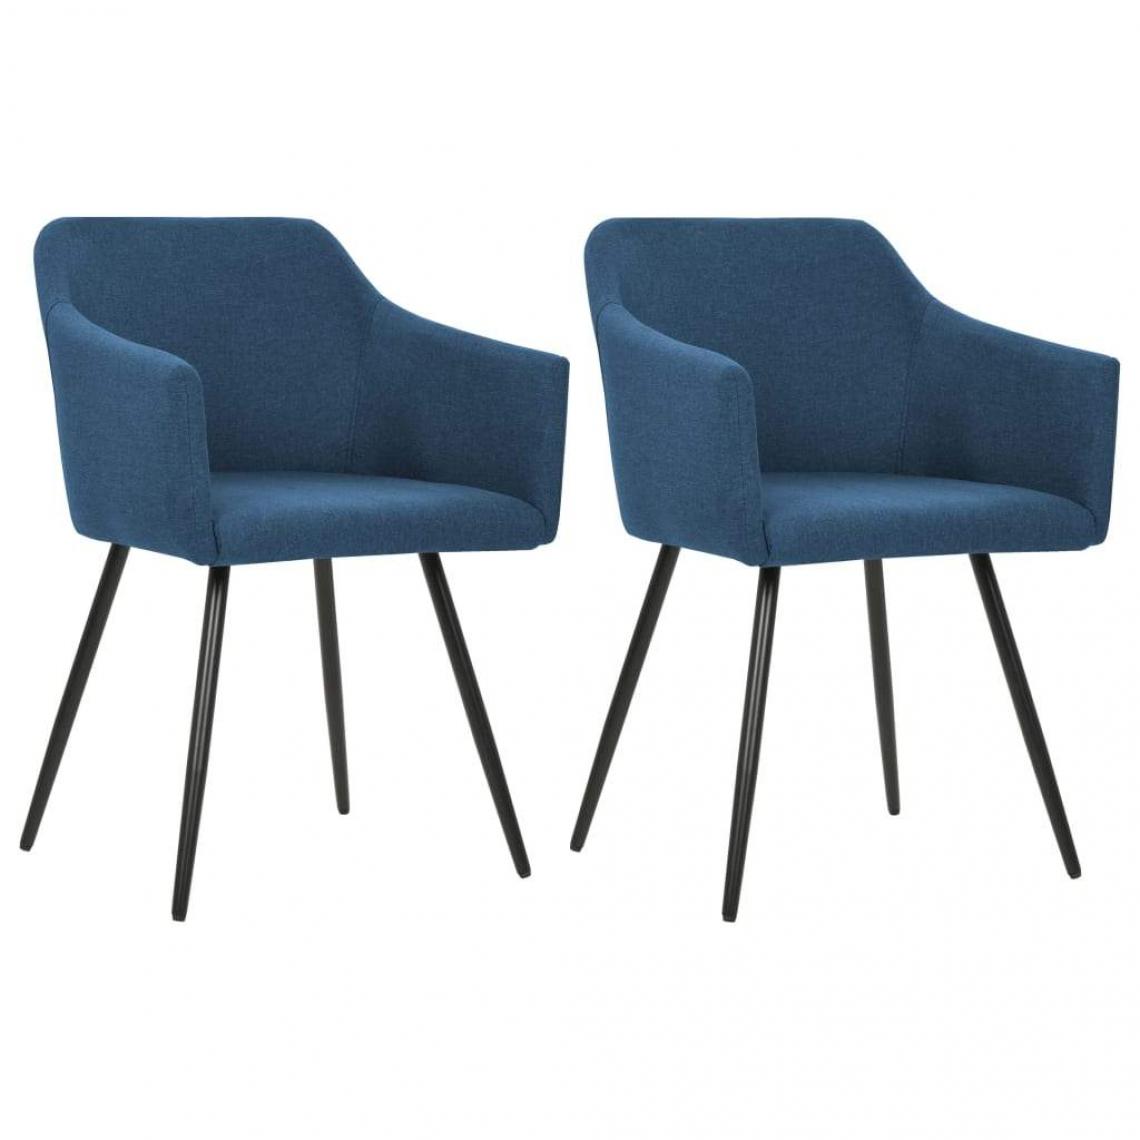 Decoshop26 - Lot de 2 chaises de salle à manger cuisine design moderne tissu bleuCDS020228 - Chaises